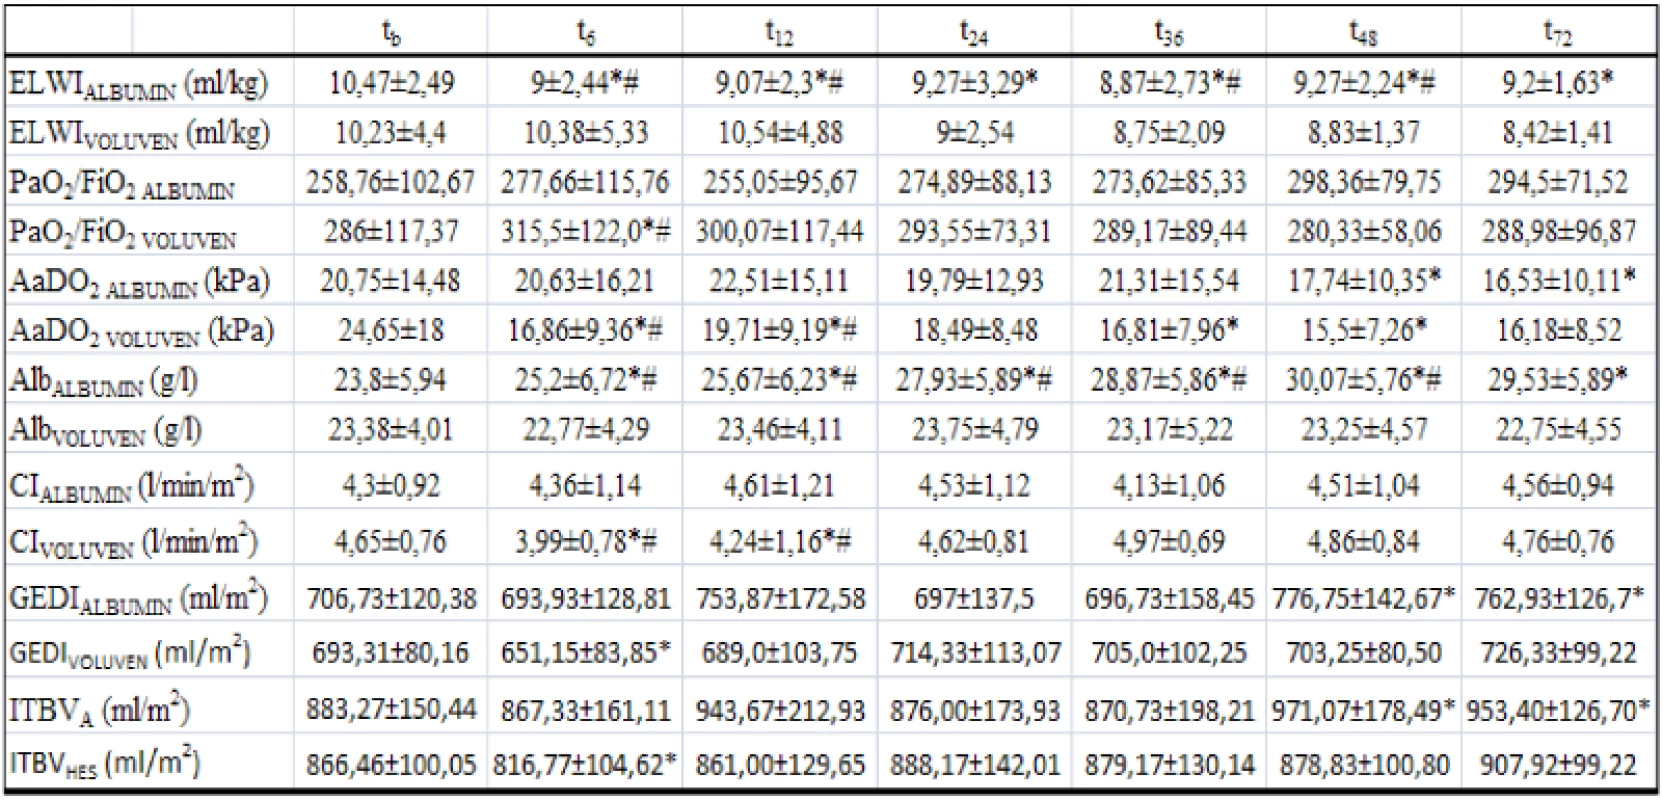 Souhrn sledovaných proměnných (ELWI, PaO2/FiO2, AaDO2, Alb, CI, GEDI, ITBI) u obou skupin 
Data jsou prezentována jako průměr±směrodatná odchylka. (*p&lt;0,05 v porovnání s baseline ve skupině ALBUMIN a VOLUVEN, # p&lt;0,05 skupina ALBUMIN v porovnání se skupinou VOLUVEN).